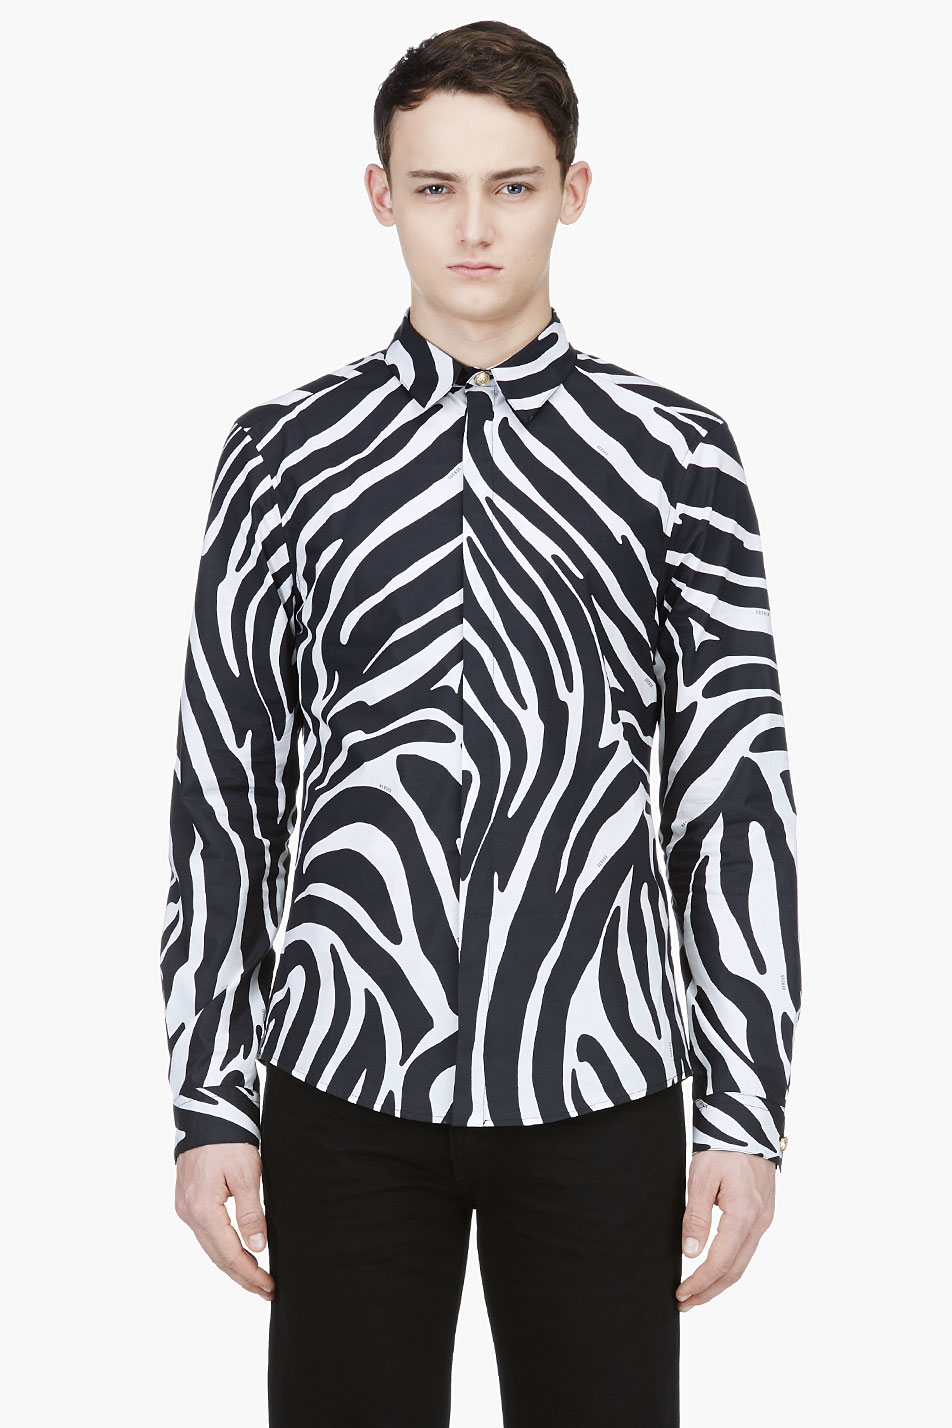 Lyst - Versus Black and White Zebra Print Shirt in Black for Men